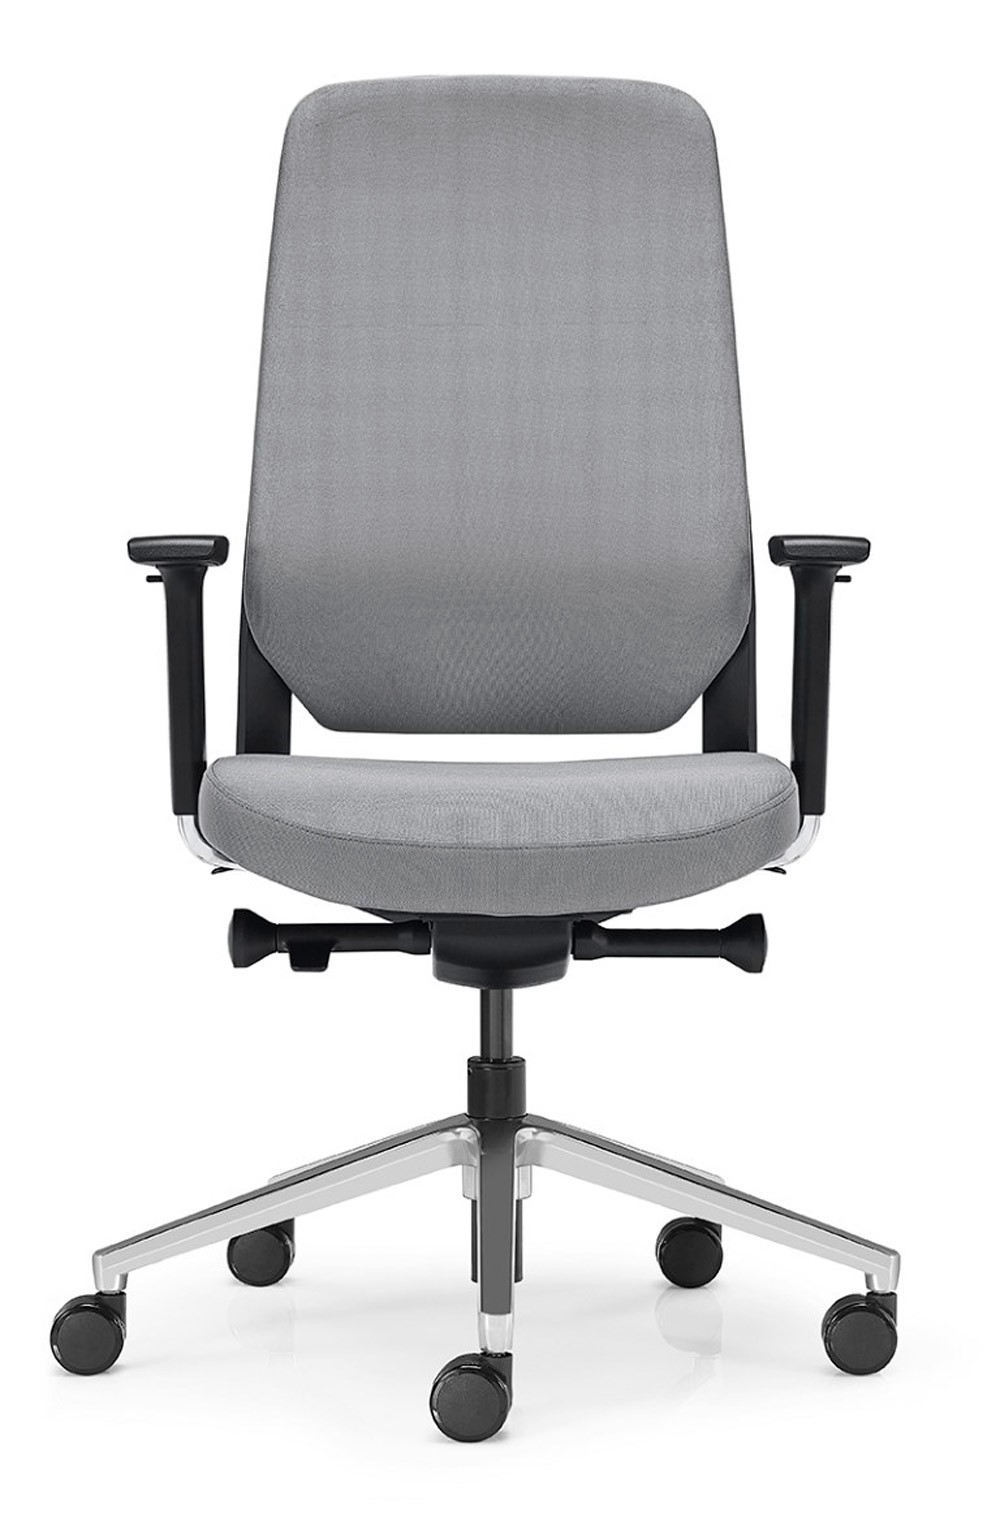 A cadeira de escritório Silk Low é a escolha certa para quem procura conforto e ergonomia no seu dia a dia de trabalho.